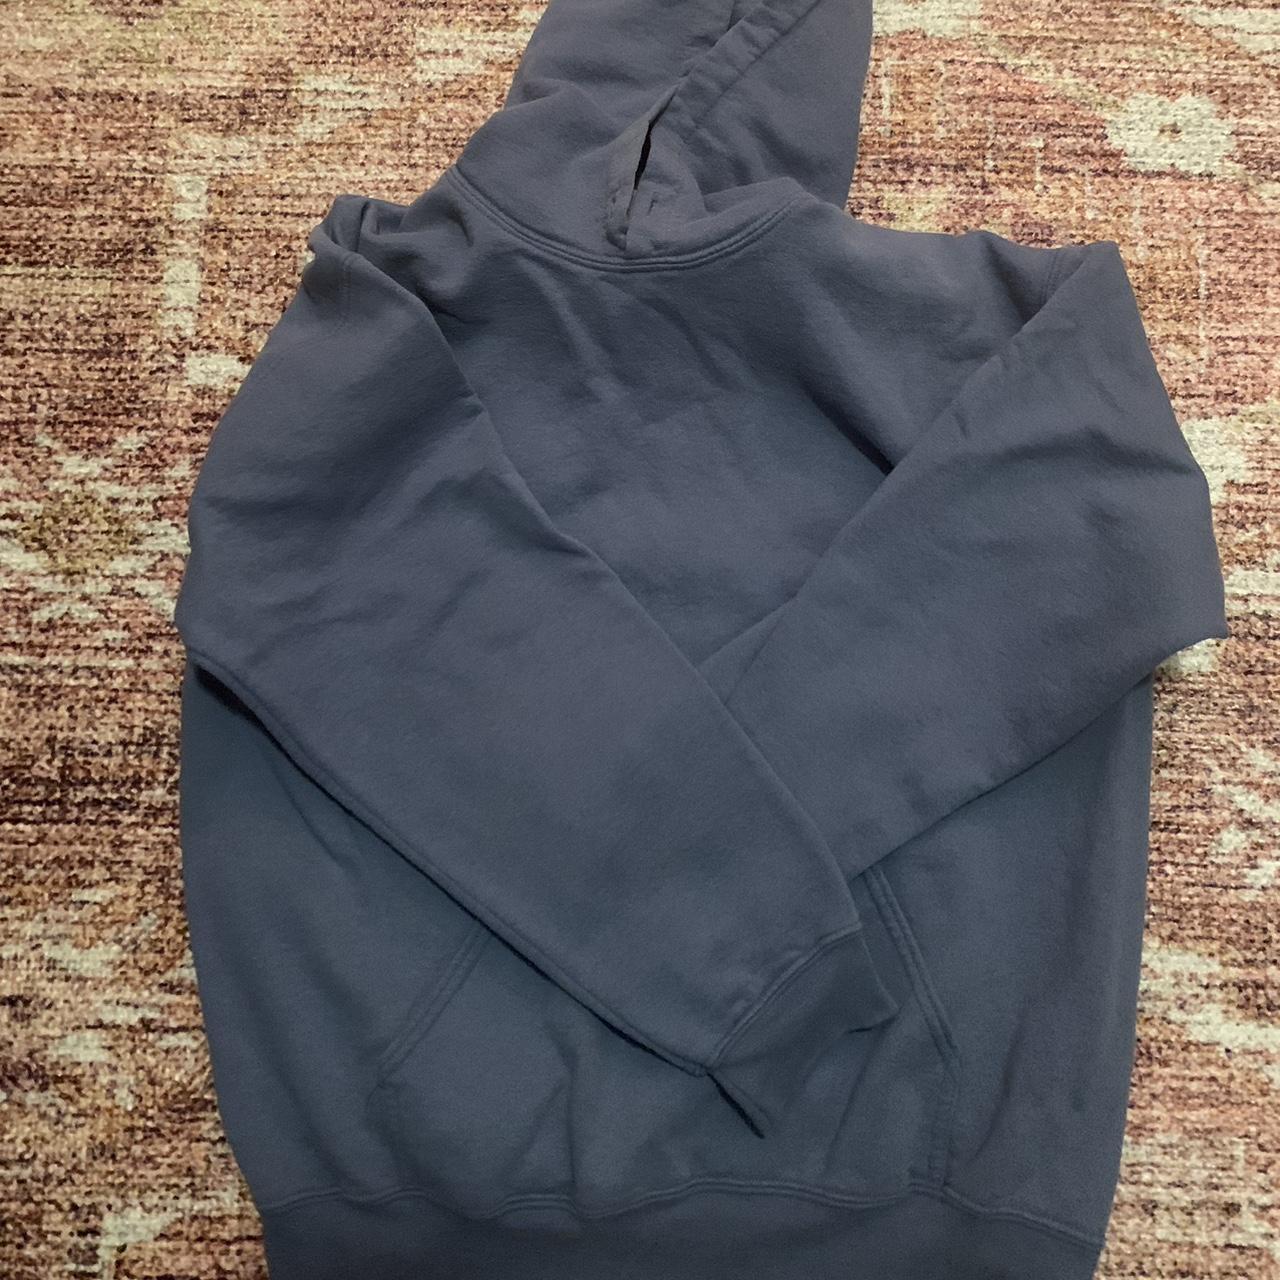 Plain blue hoodie missing drawstrings - Depop